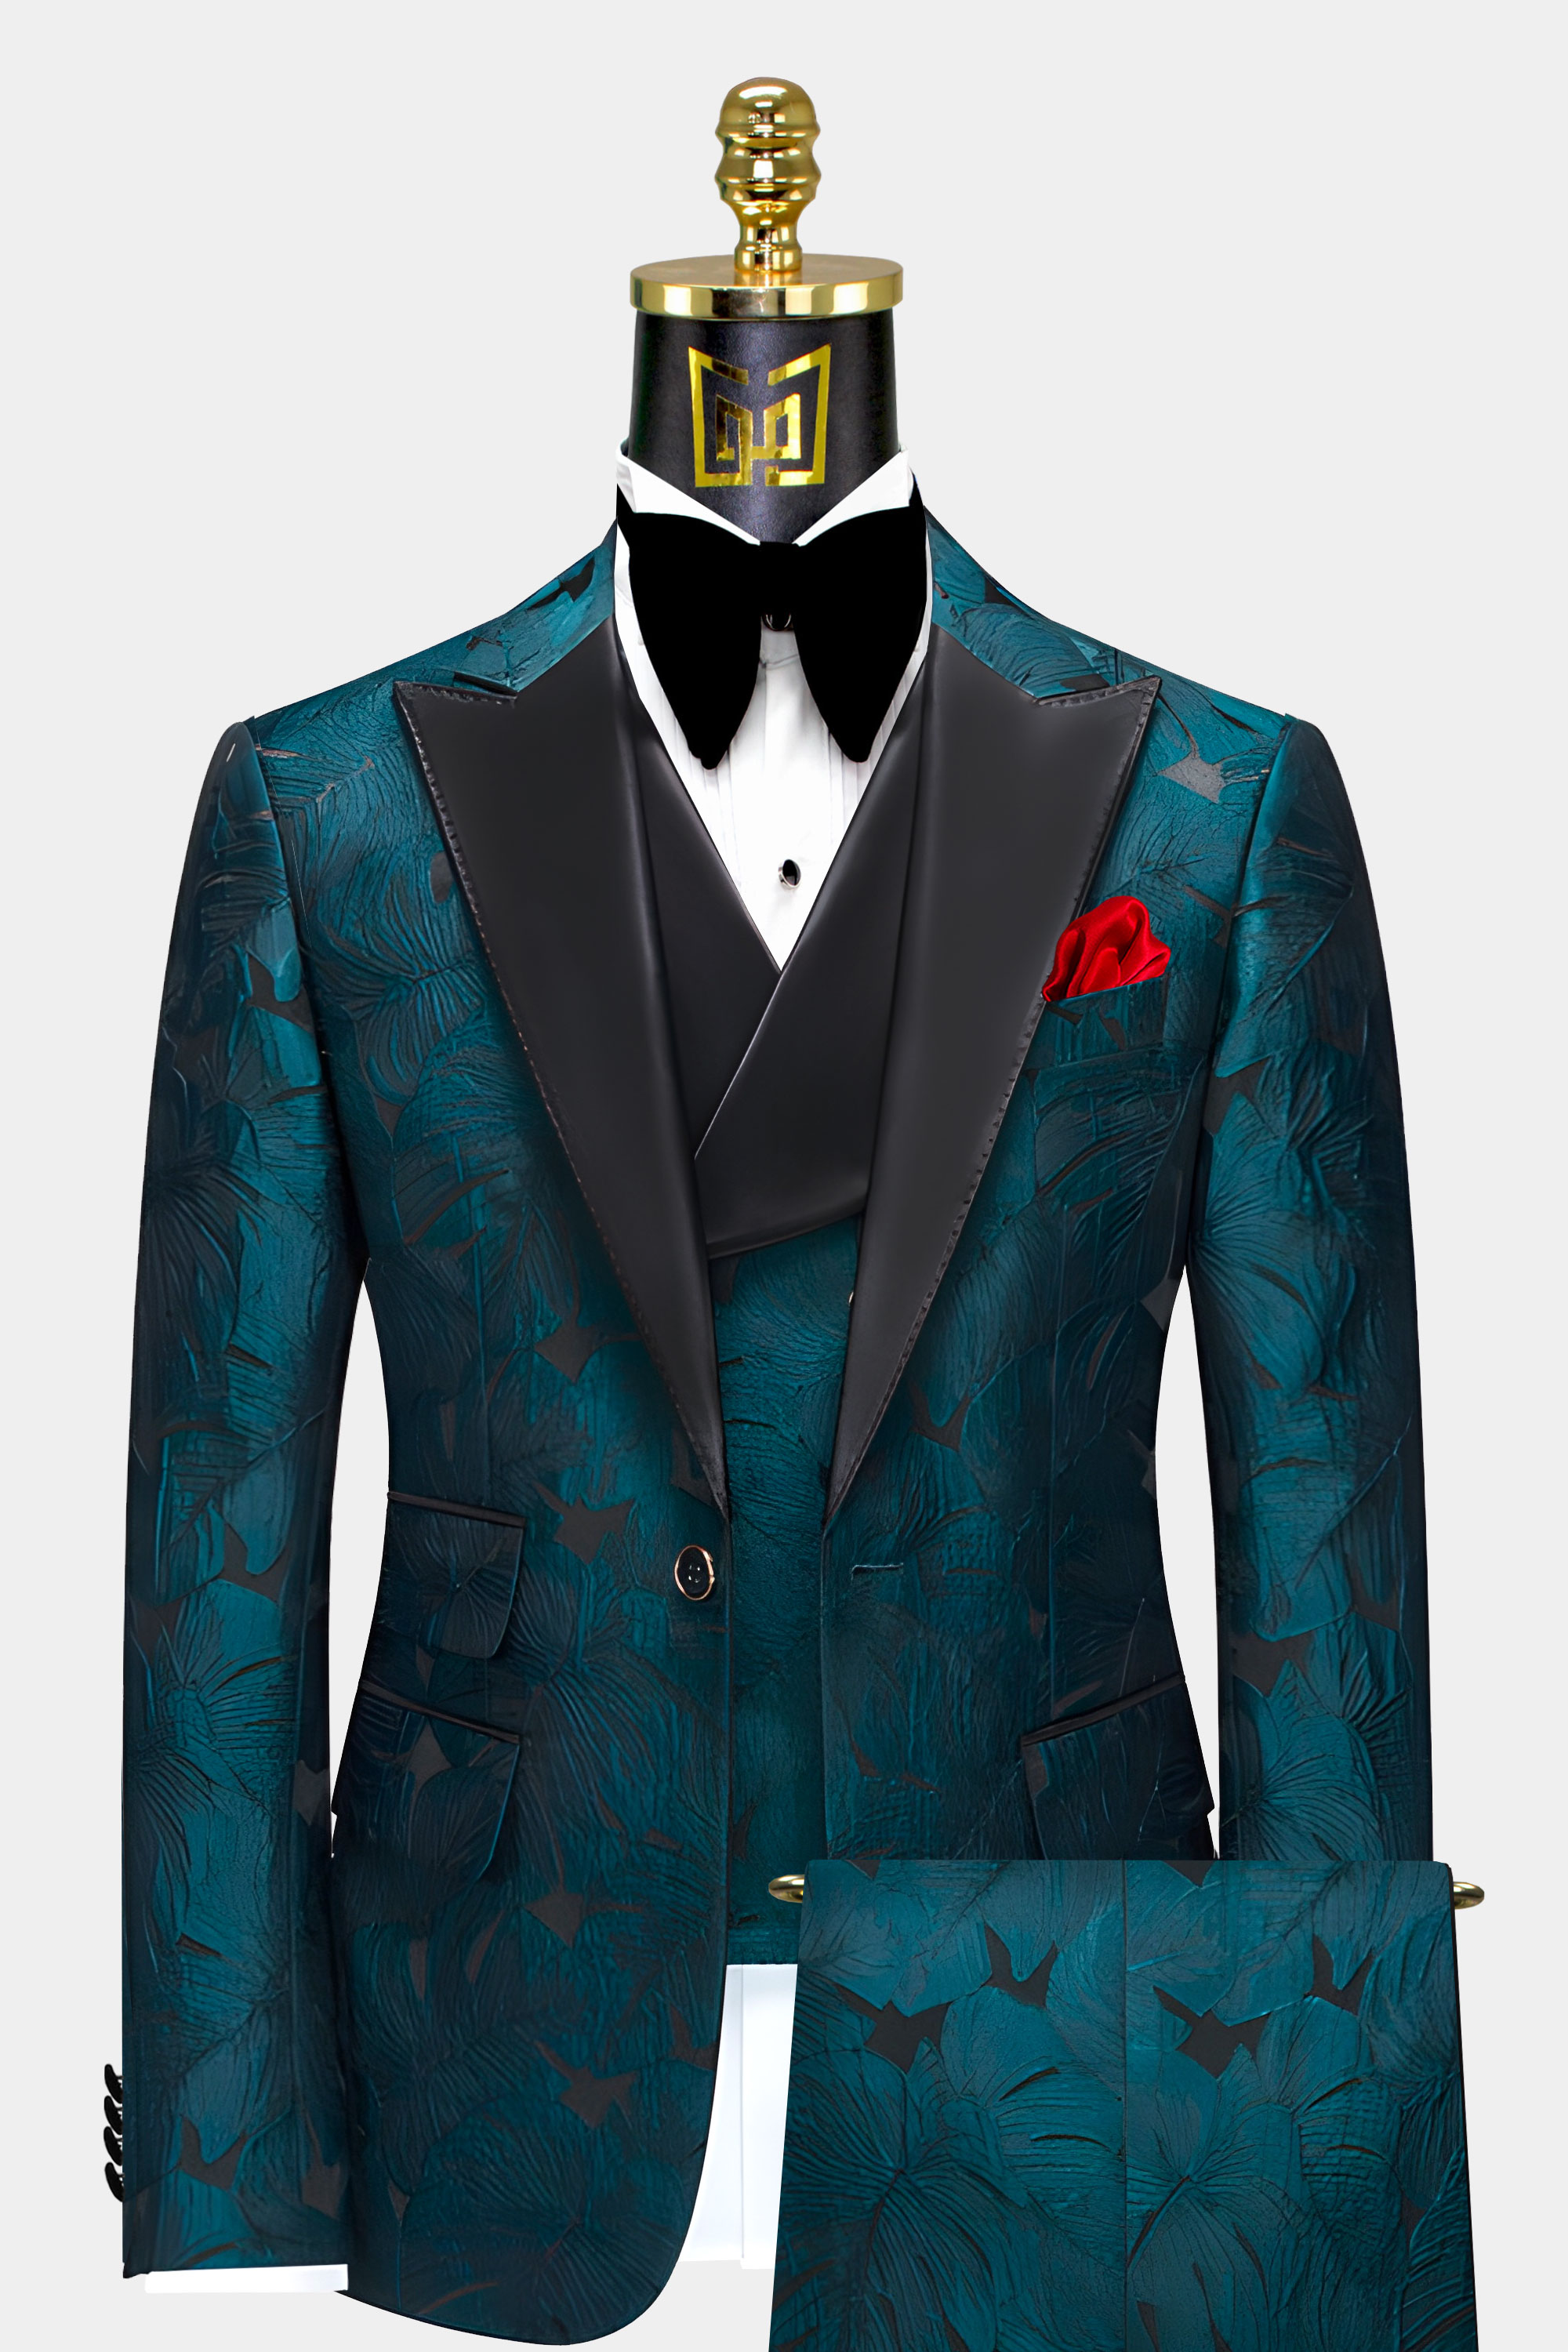 Mens-Dark-Teal-Tuxedo-Rrom-Groom-Wedding-Suits-from-Gentlemansguru.com